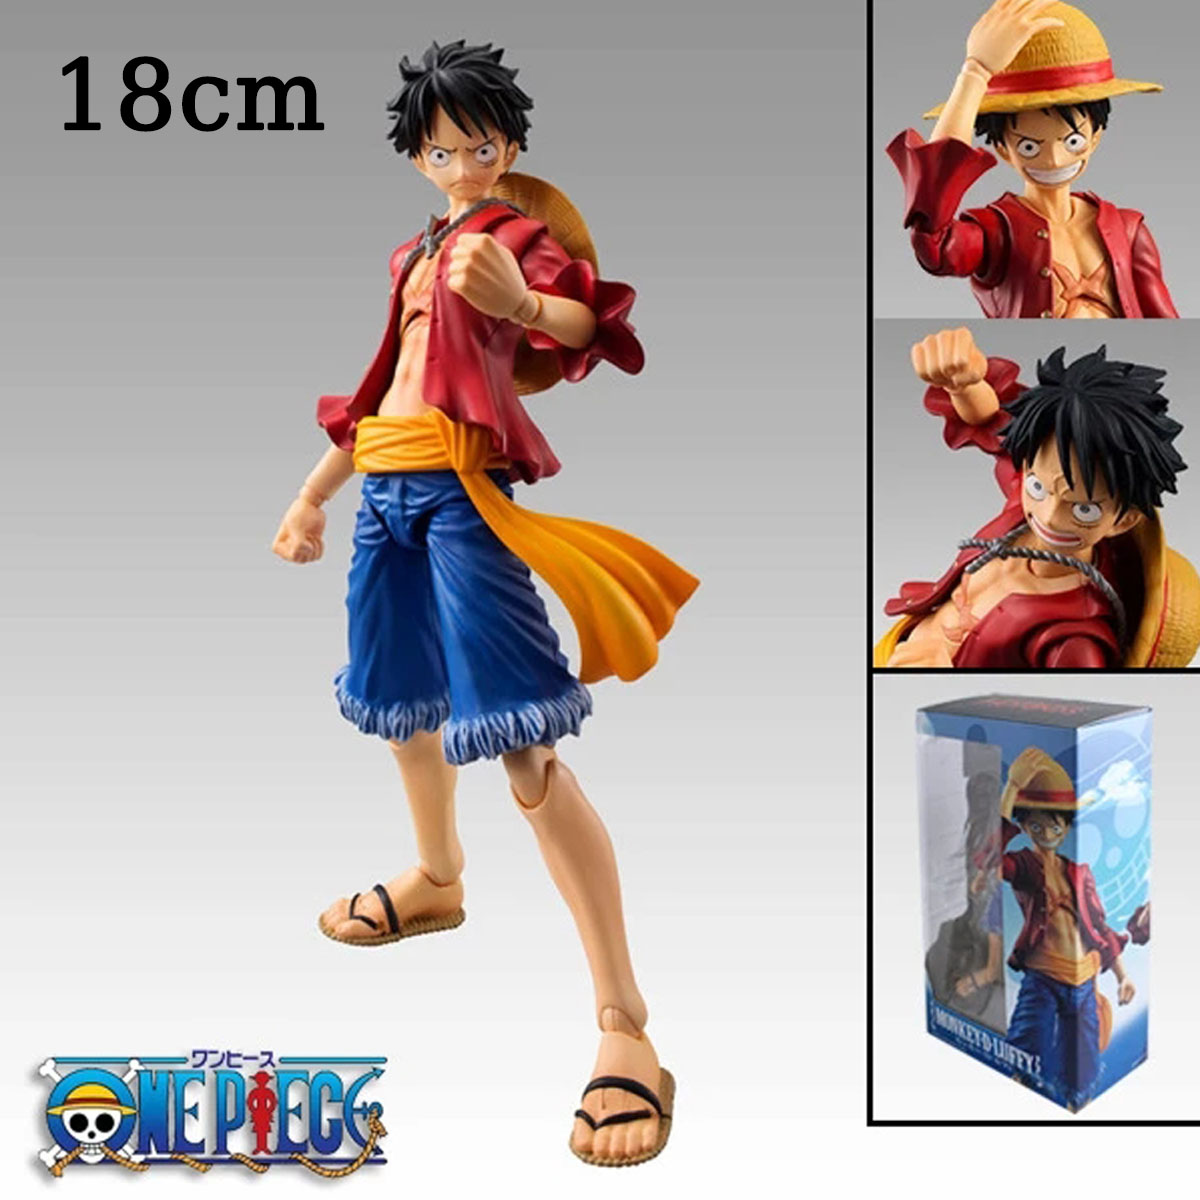 One Piece Monkey D' Luffy Gear 5 Figure - 18cm